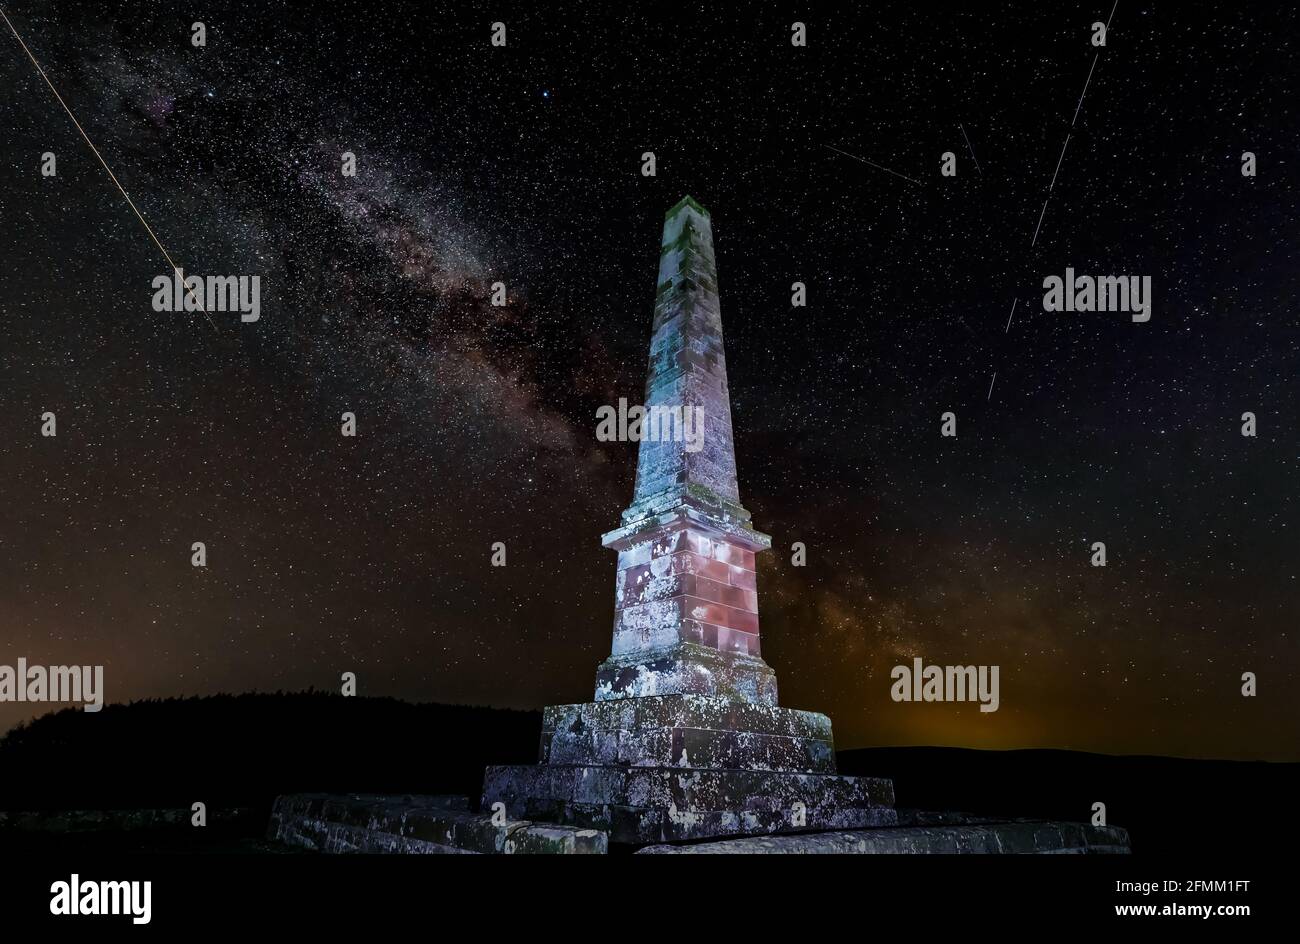 Monumento obelisco Balfour di notte con stelle della Via Lattea in cielo e meteora, East Lothian, Scozia, Regno Unito Foto Stock